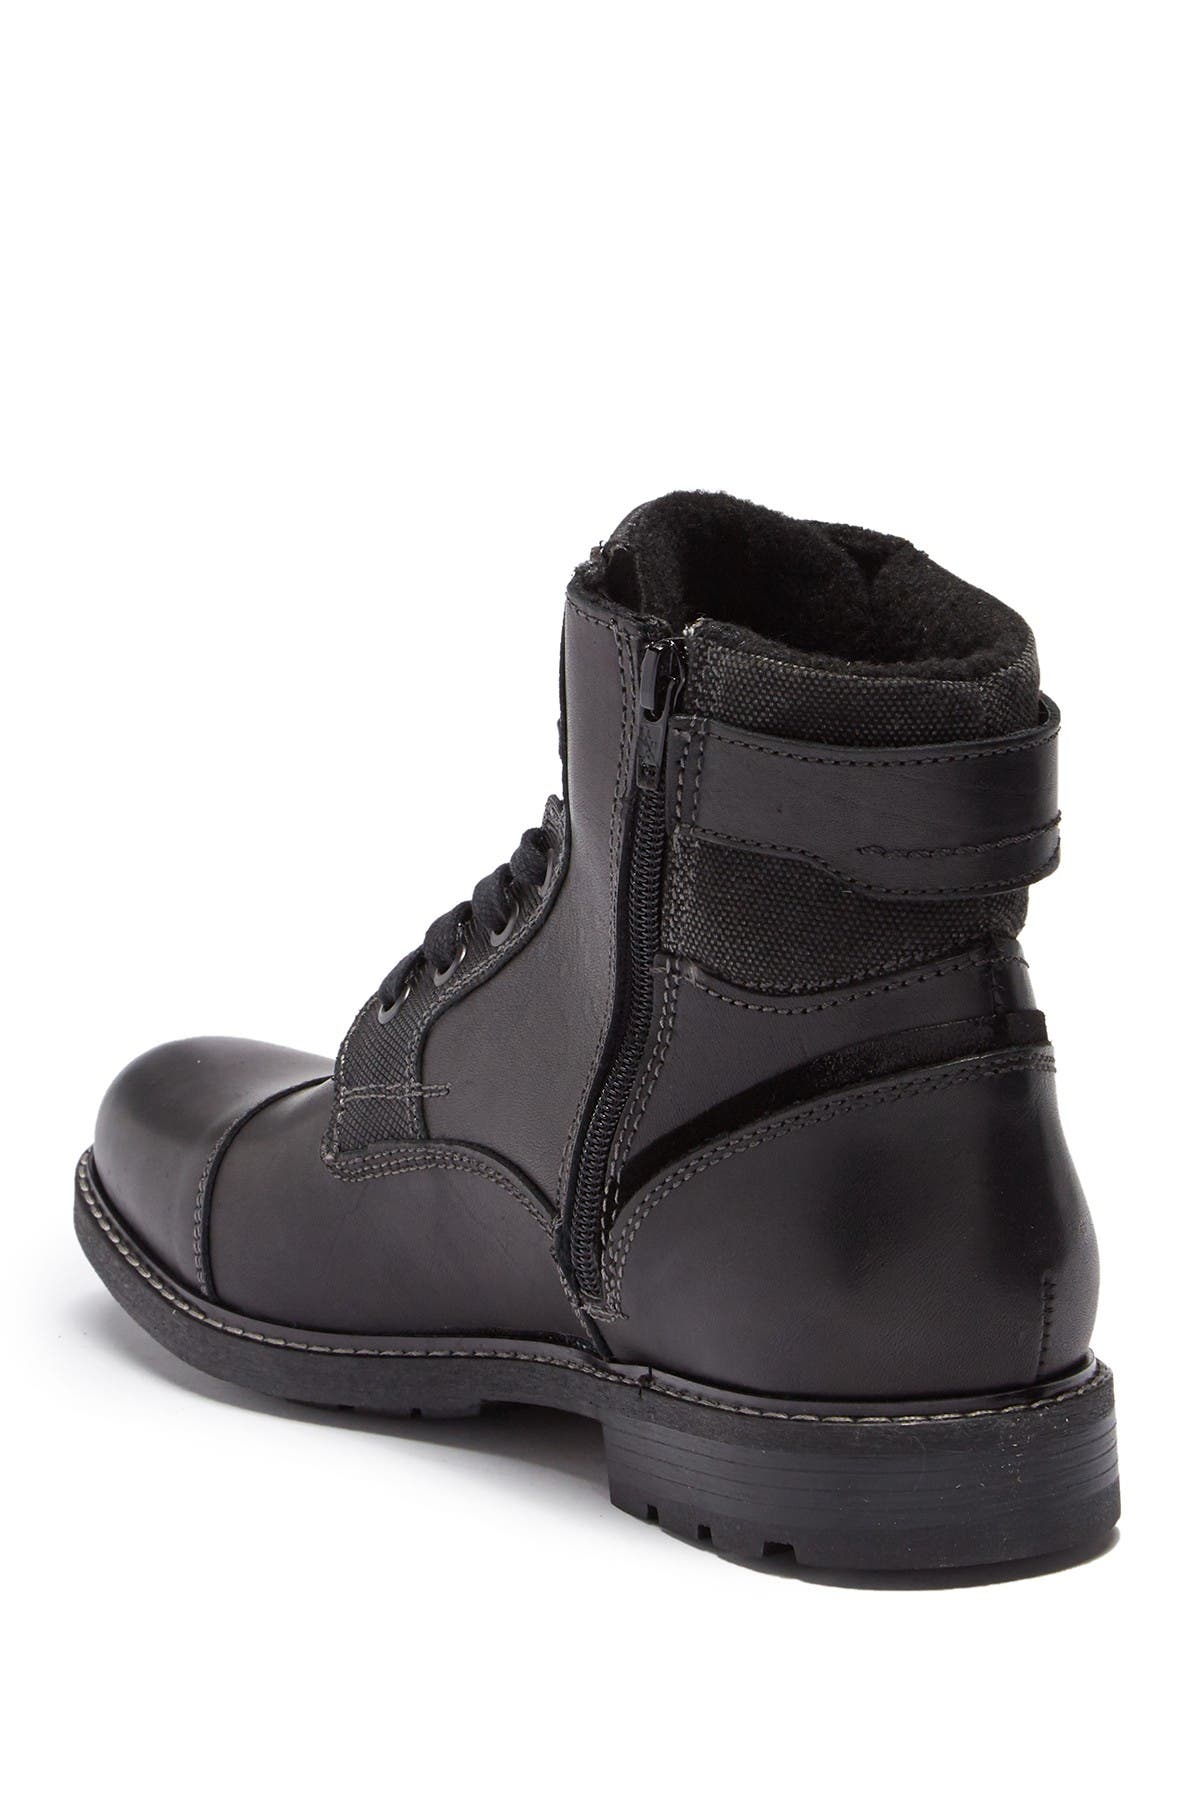 Aldo | Olaenia Leather Lace-Up Boot 